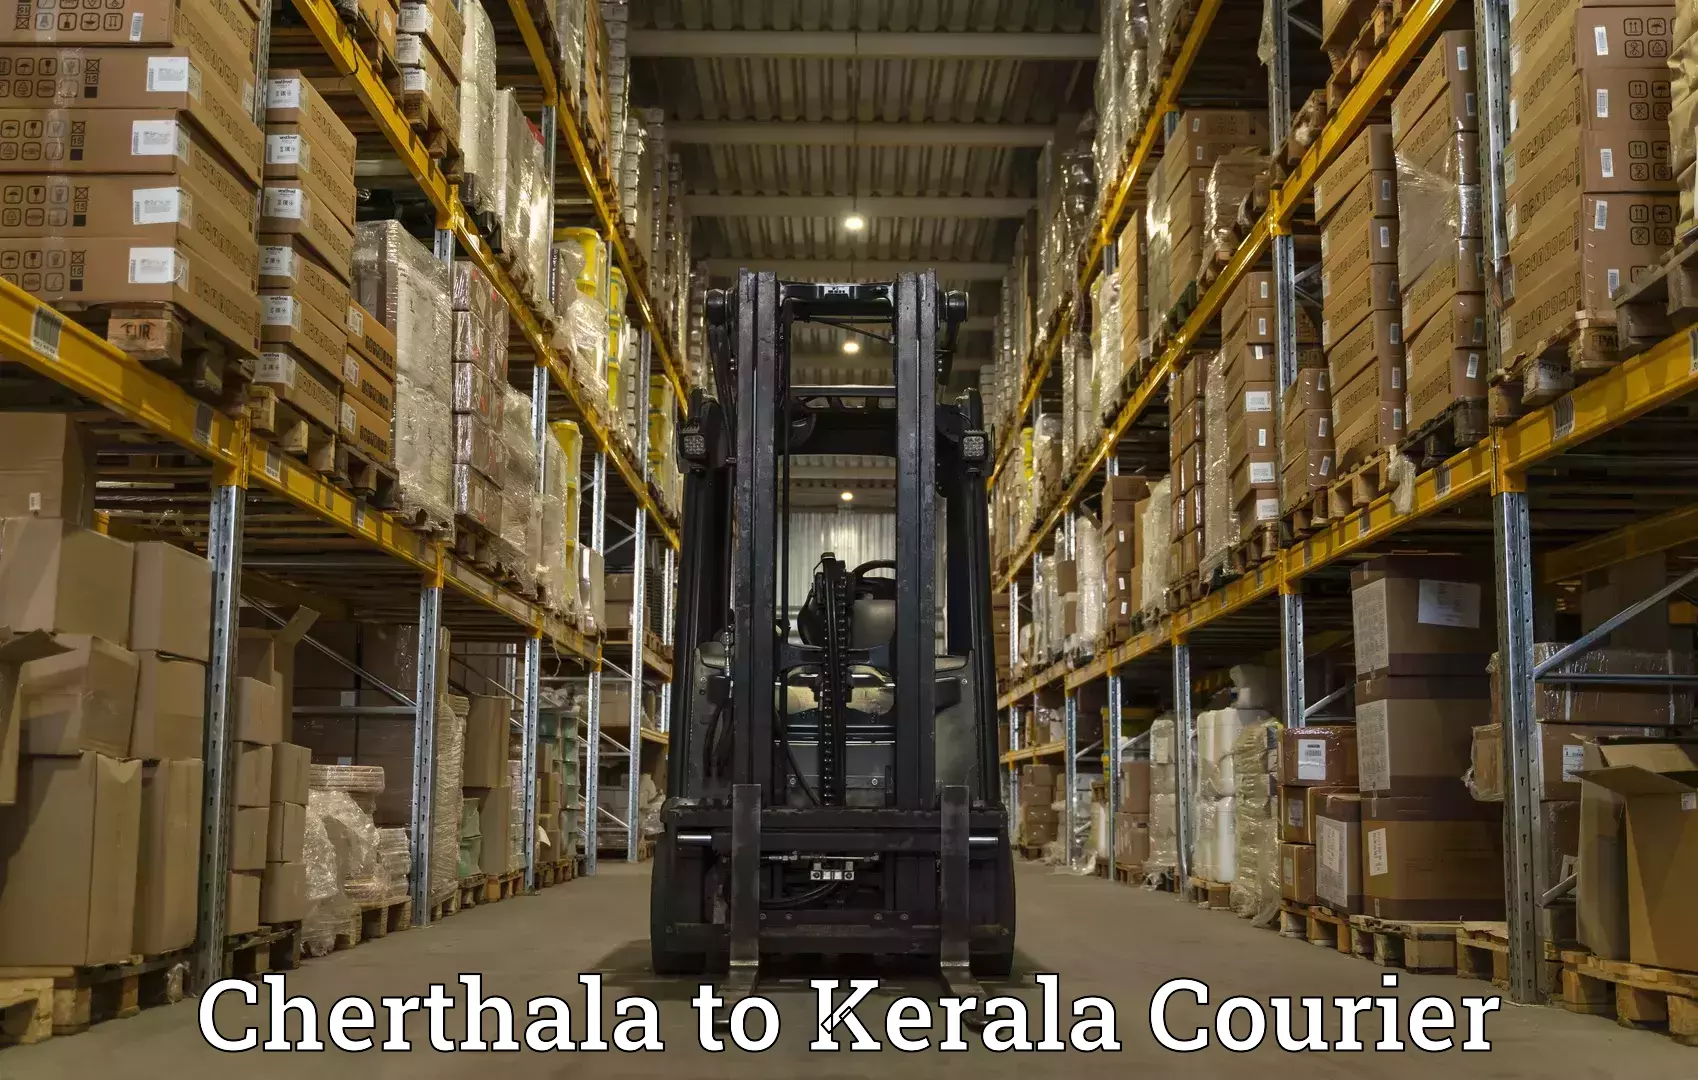 Next-day freight services Cherthala to Tirur